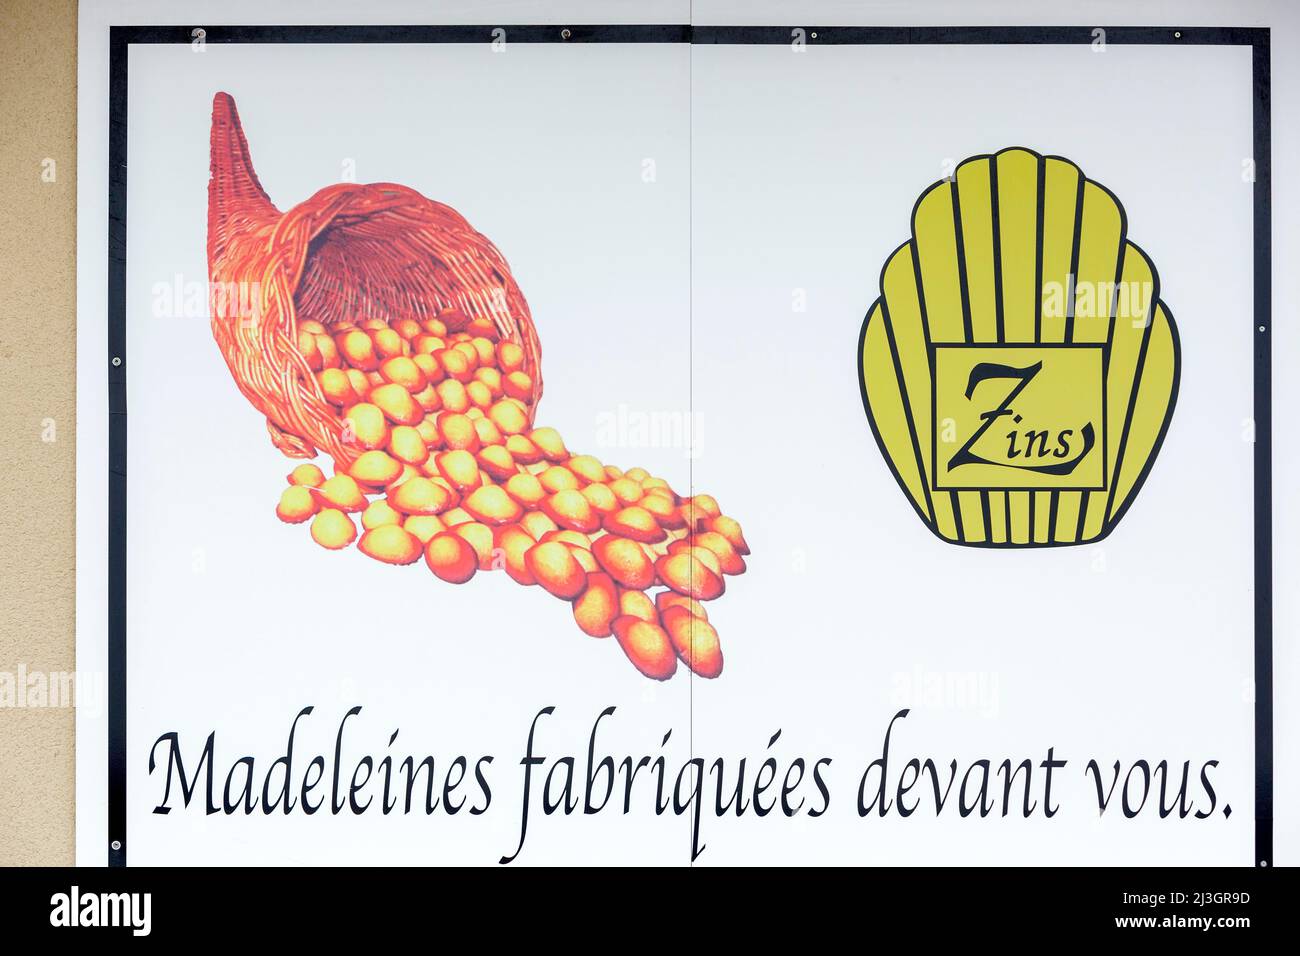 France, Meuse, Commercy, signe de la boutique et atelier de fabrication de la madeleine de Commercy la Boite à Madeleines par les frères Zins, madeleiniers depuis 1951 Banque D'Images